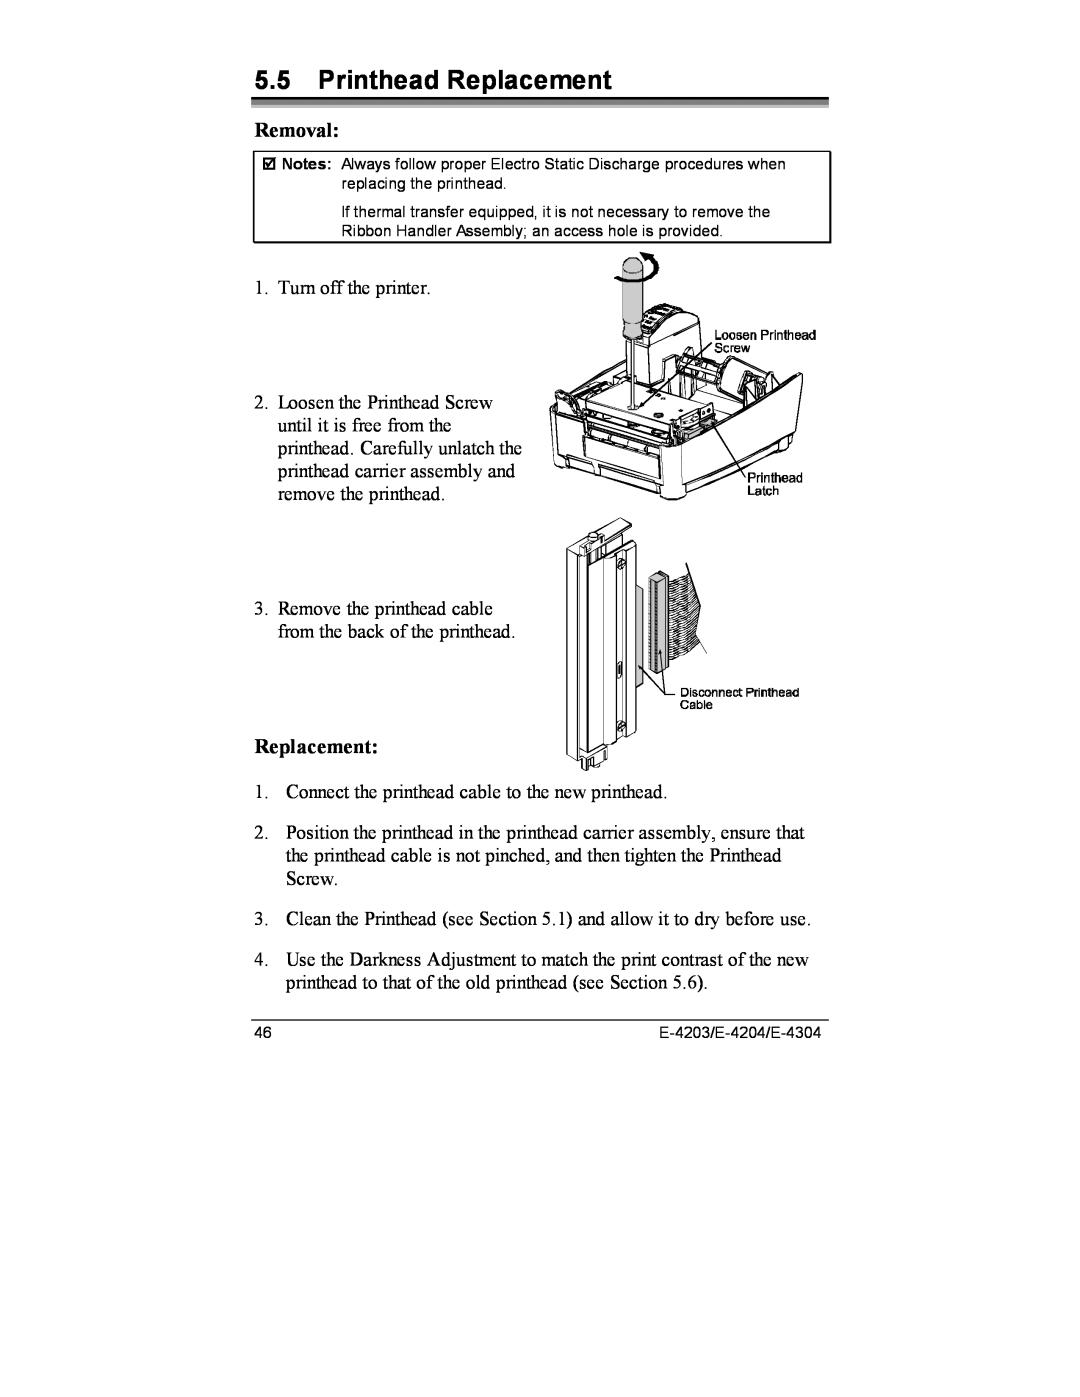 Datamax E-4304e, E-4203, E-4204 manual Printhead Replacement, Removal 